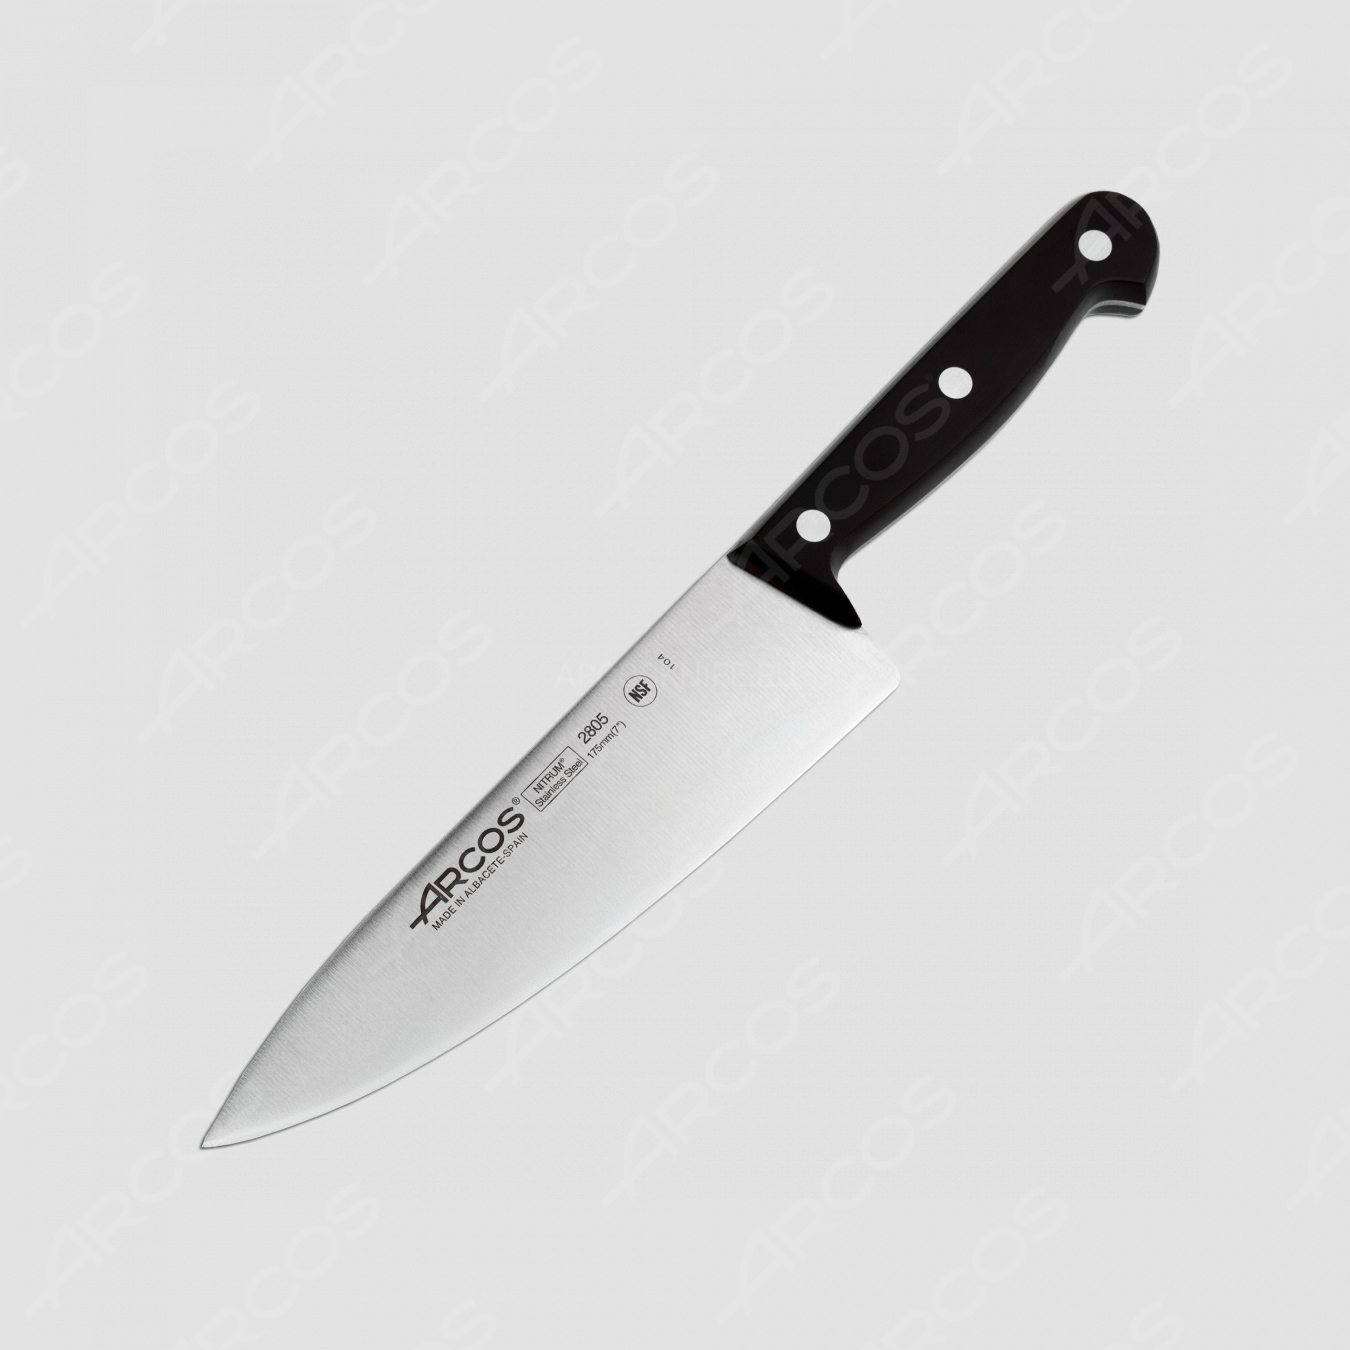 Профессиональный поварской кухонный нож 17,5 см, серия Universal, ARCOS, Испания